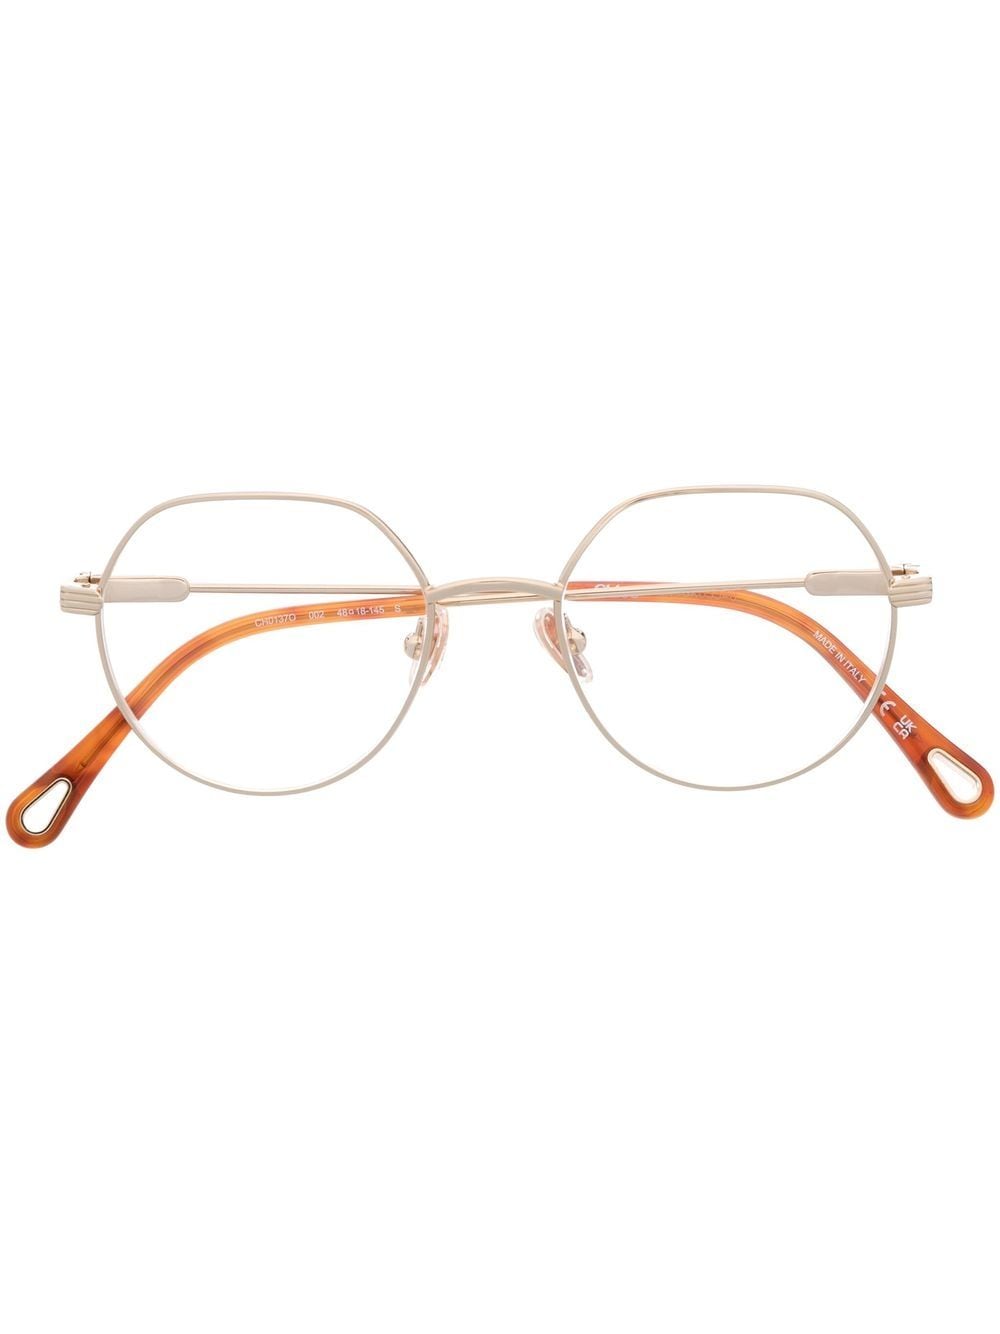 Chloé Eyewear Brille mit rundem Gestell - Gold von Chloé Eyewear